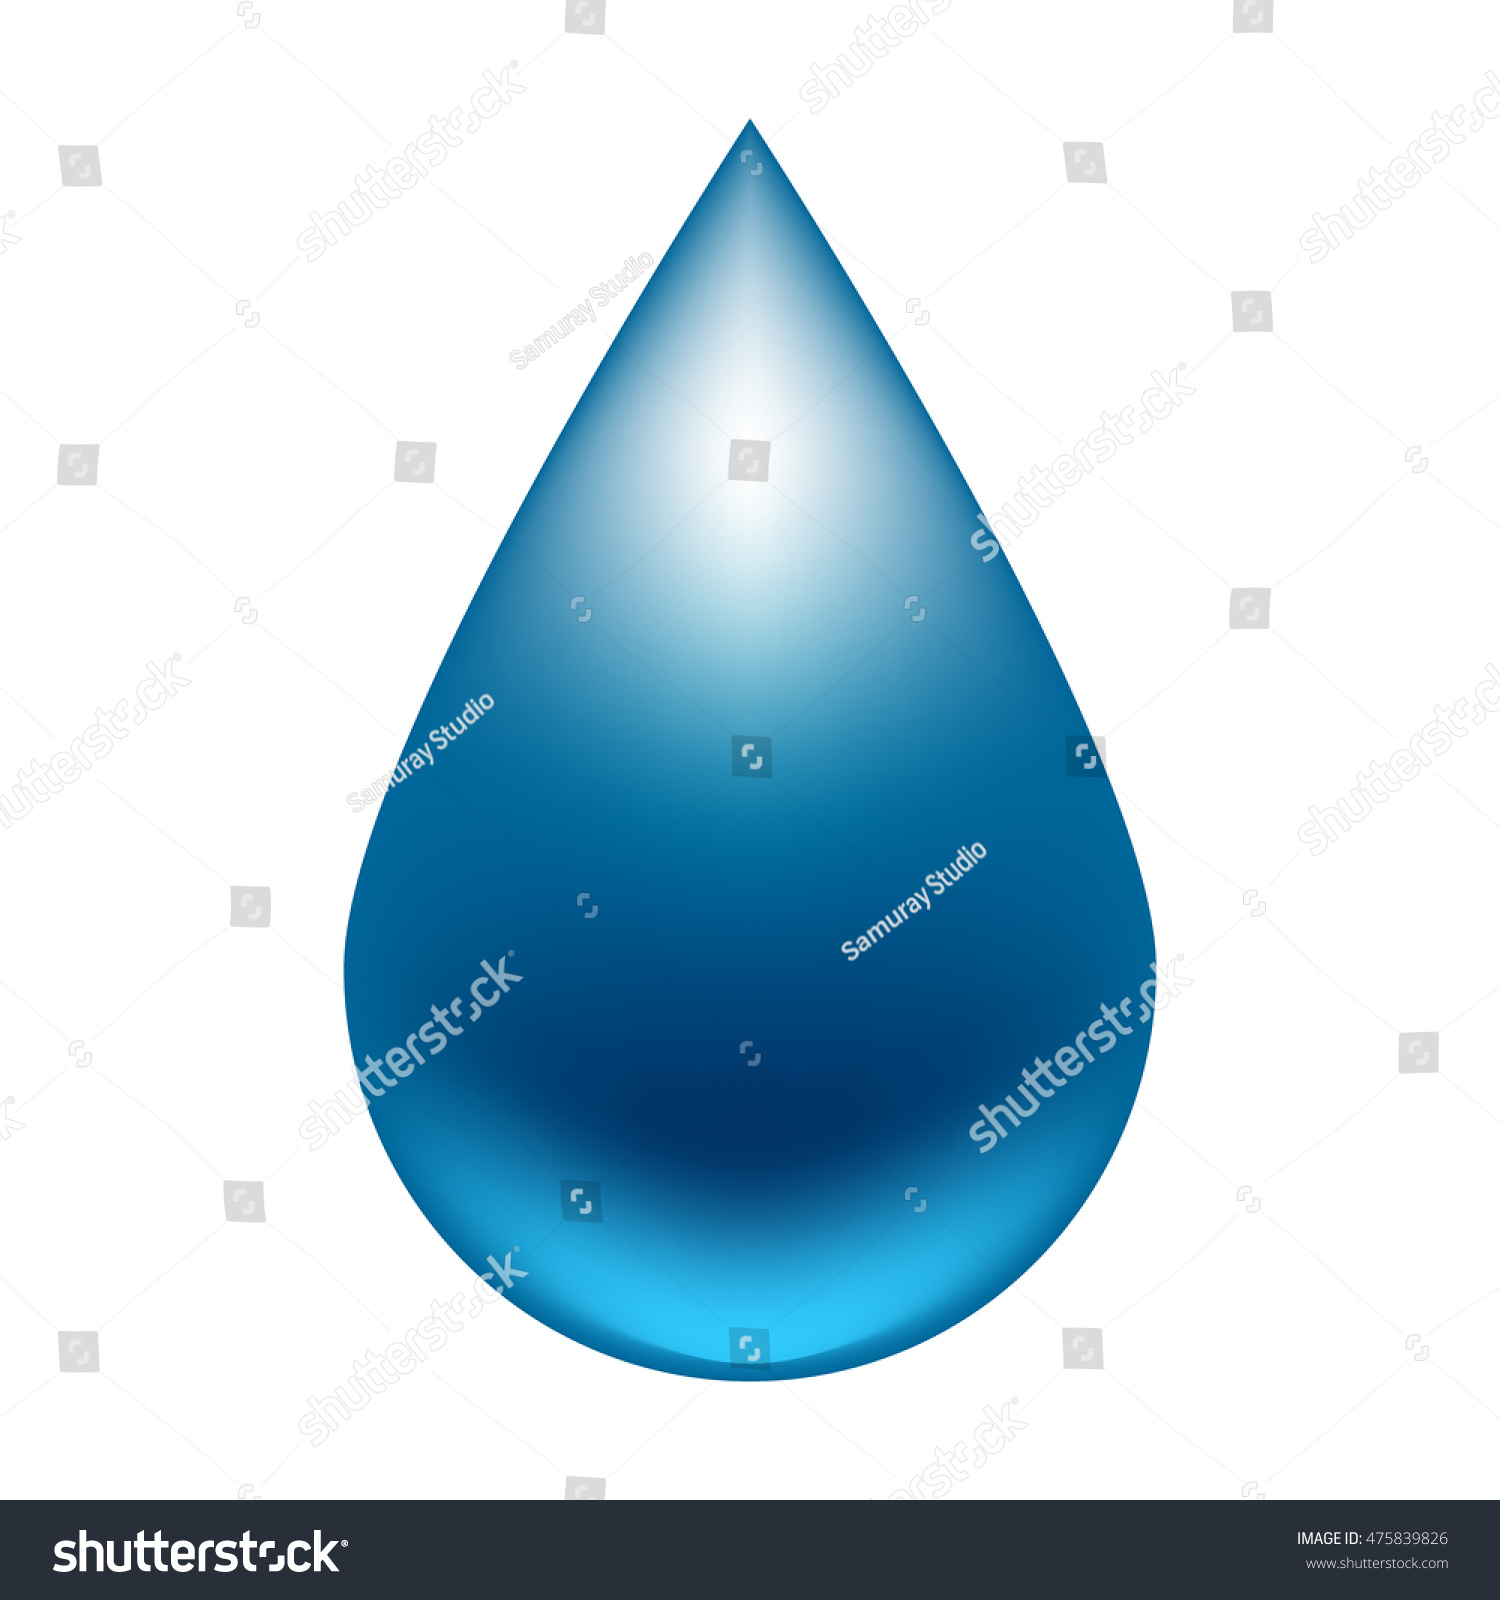 Vector Water Drop Stock Vector 475839826 - Shutterstock